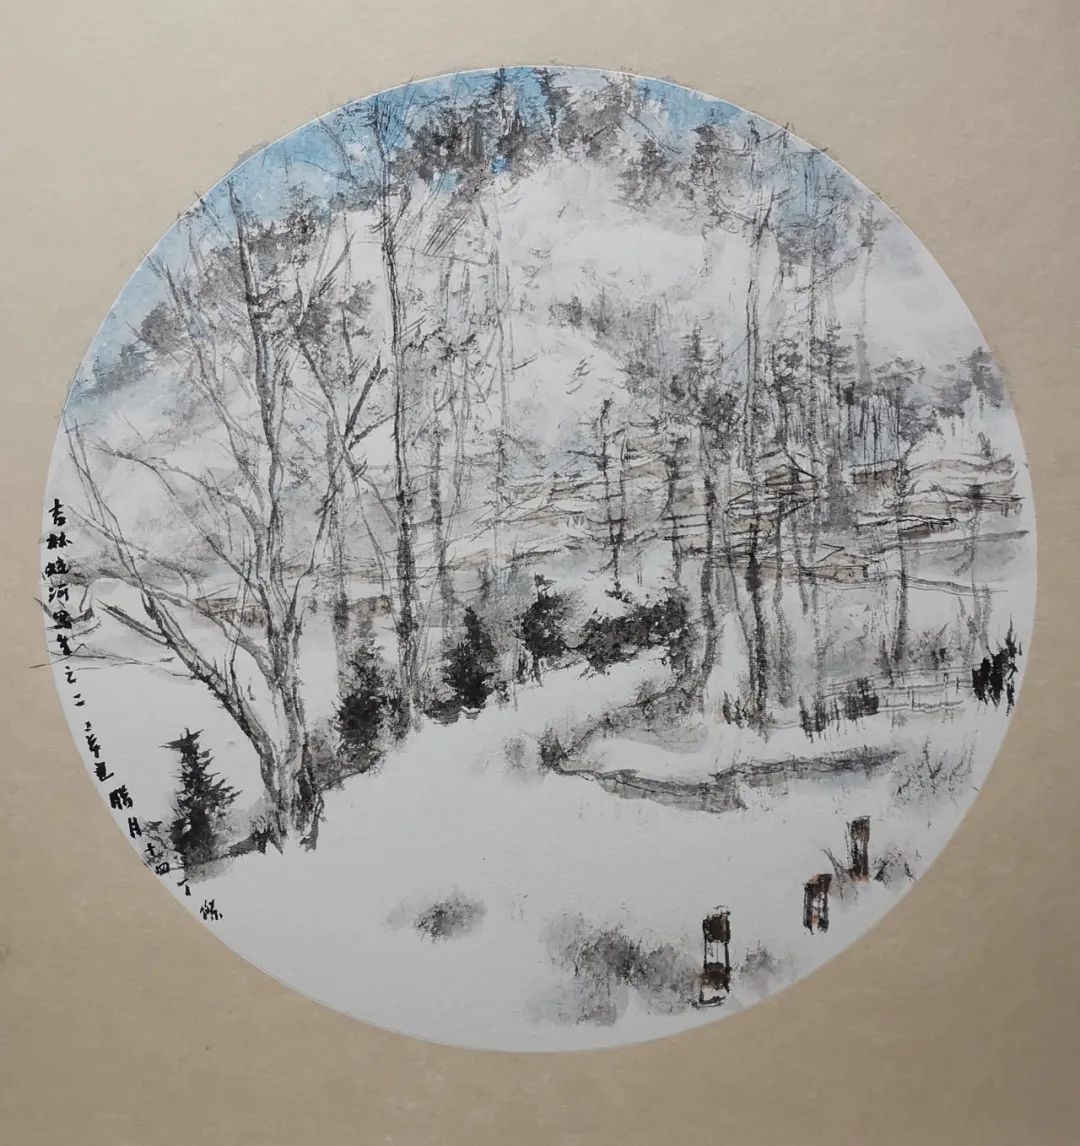 冰天雪地，涂墨情趣——著名画家丁杰写生奇丽壮观的吉林冬日美景